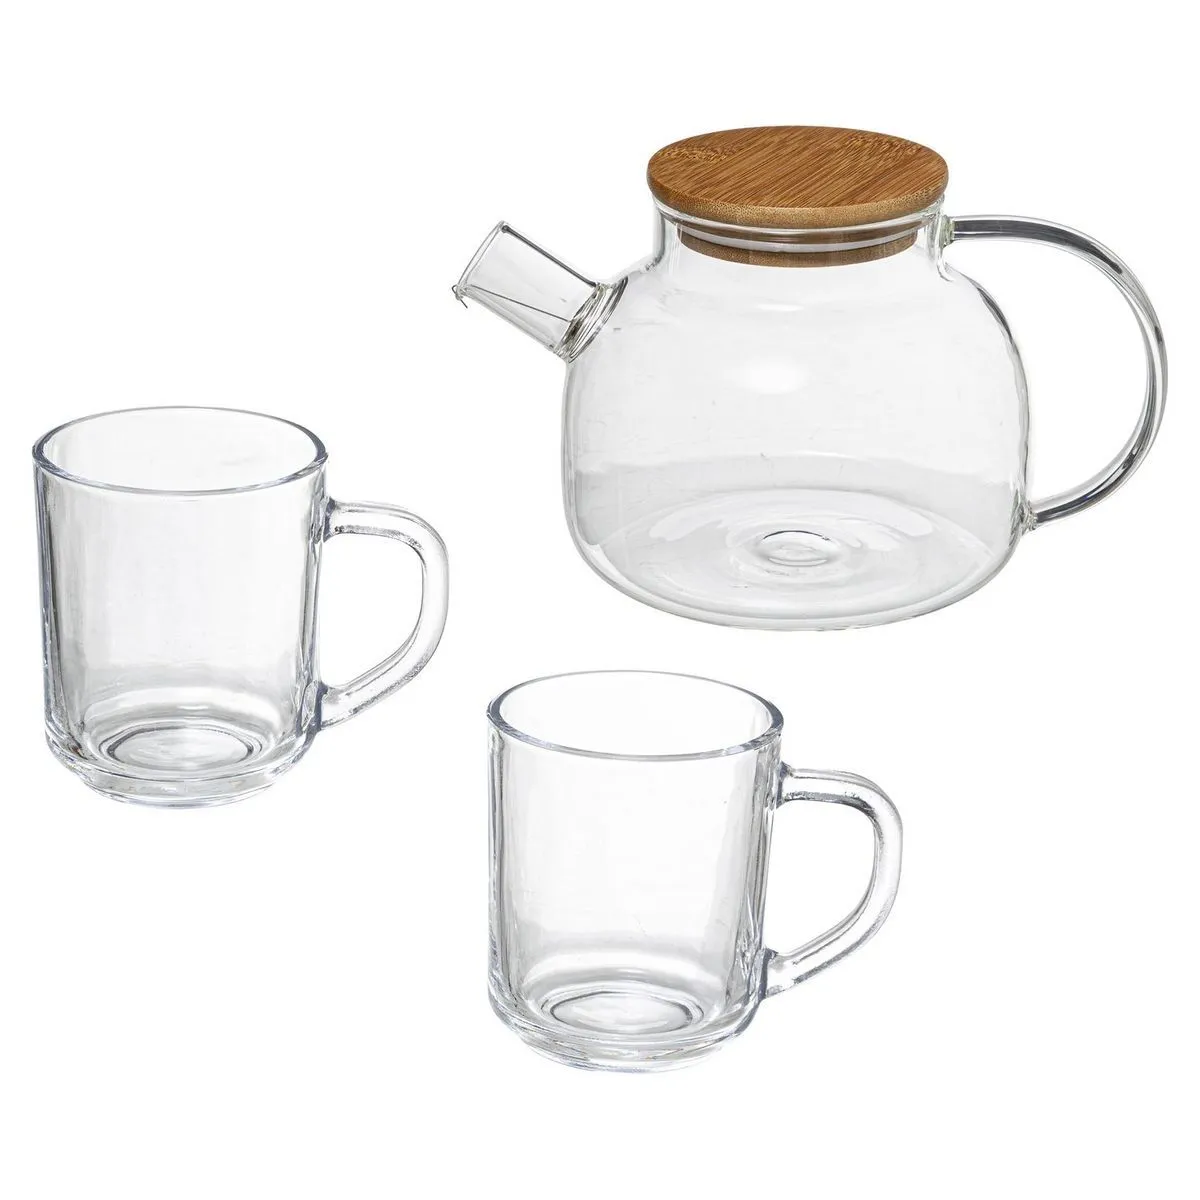 théière en verre avec 2 mugs